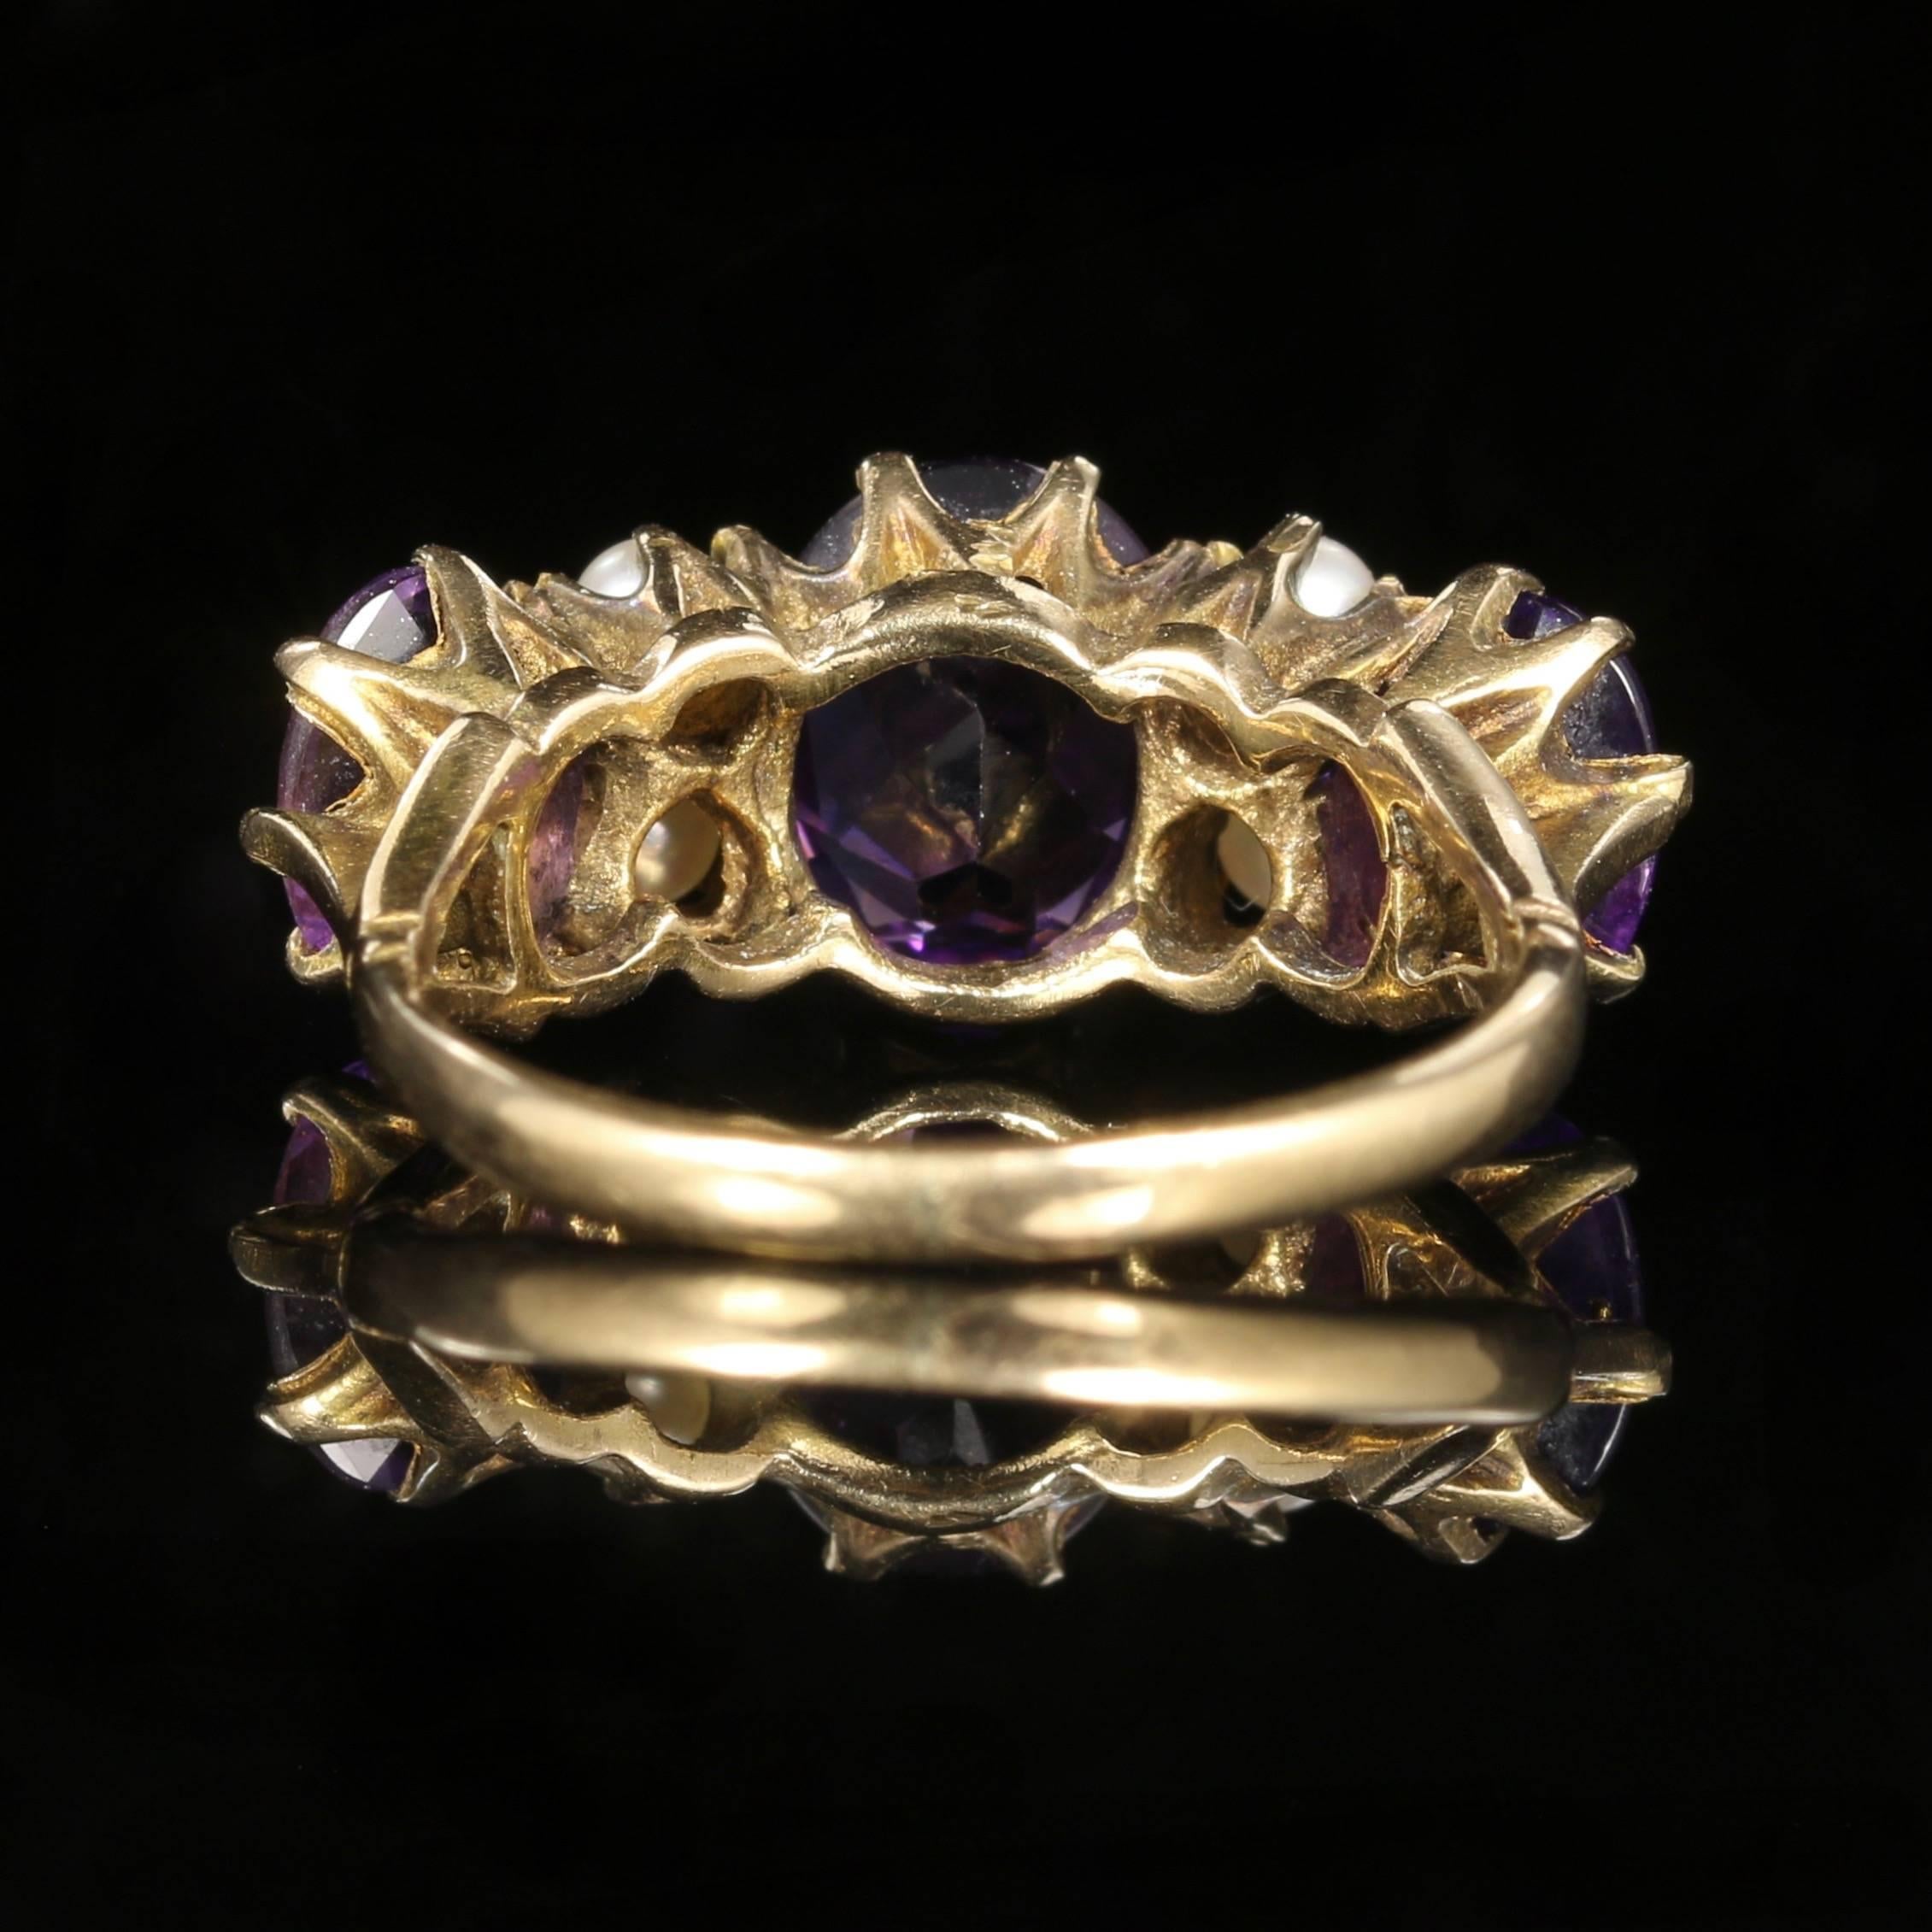 9 carat amethyst ring